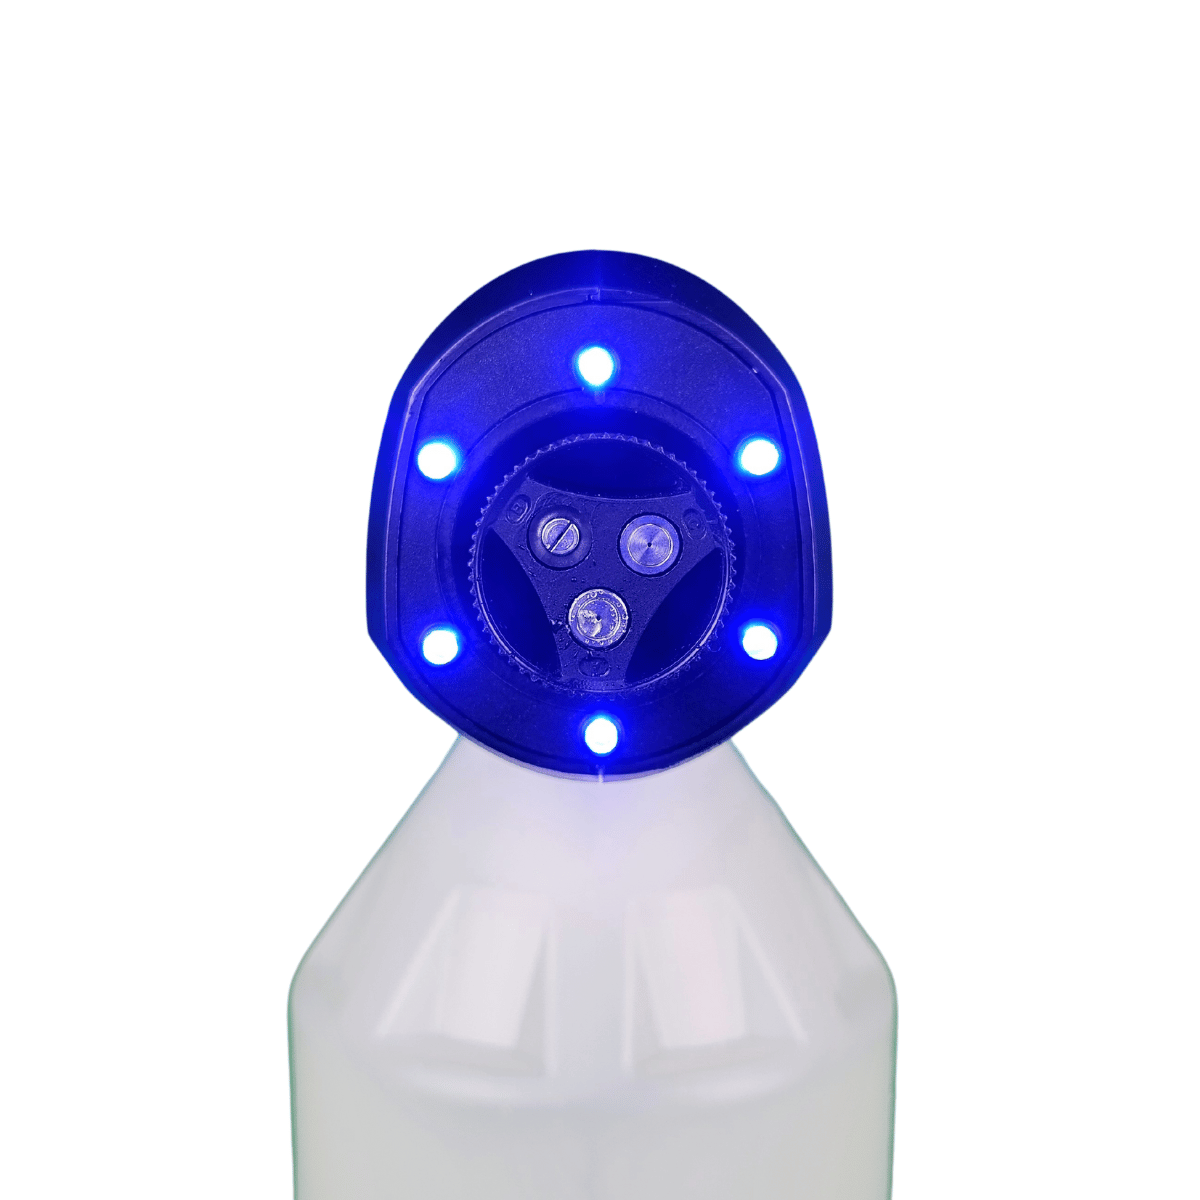 Bluebird SG 22-10 Sprayer 12V